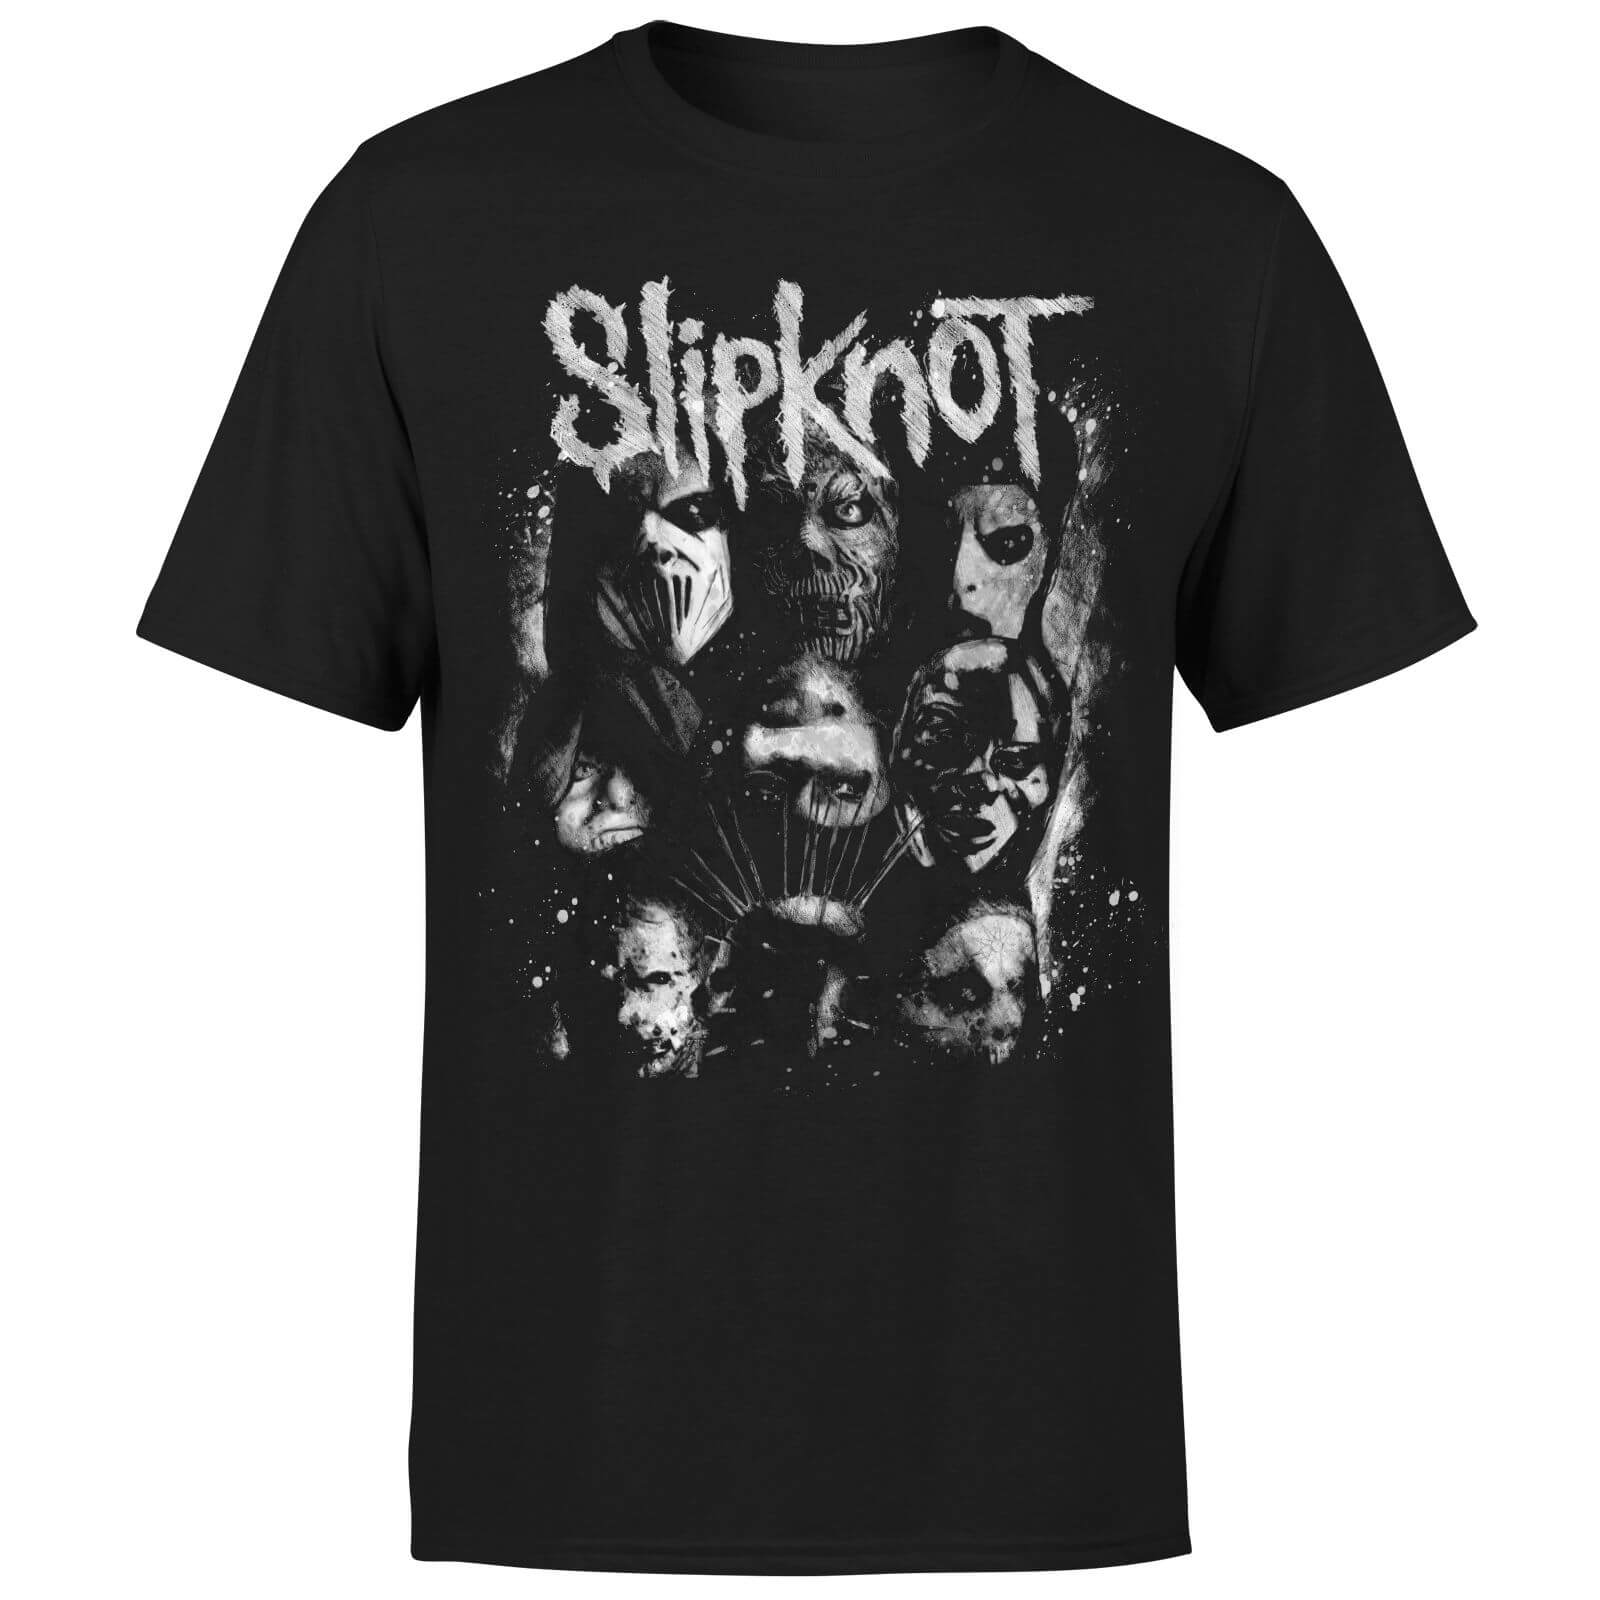 Slipknot Splatter T-Shirt - Black - M - Black